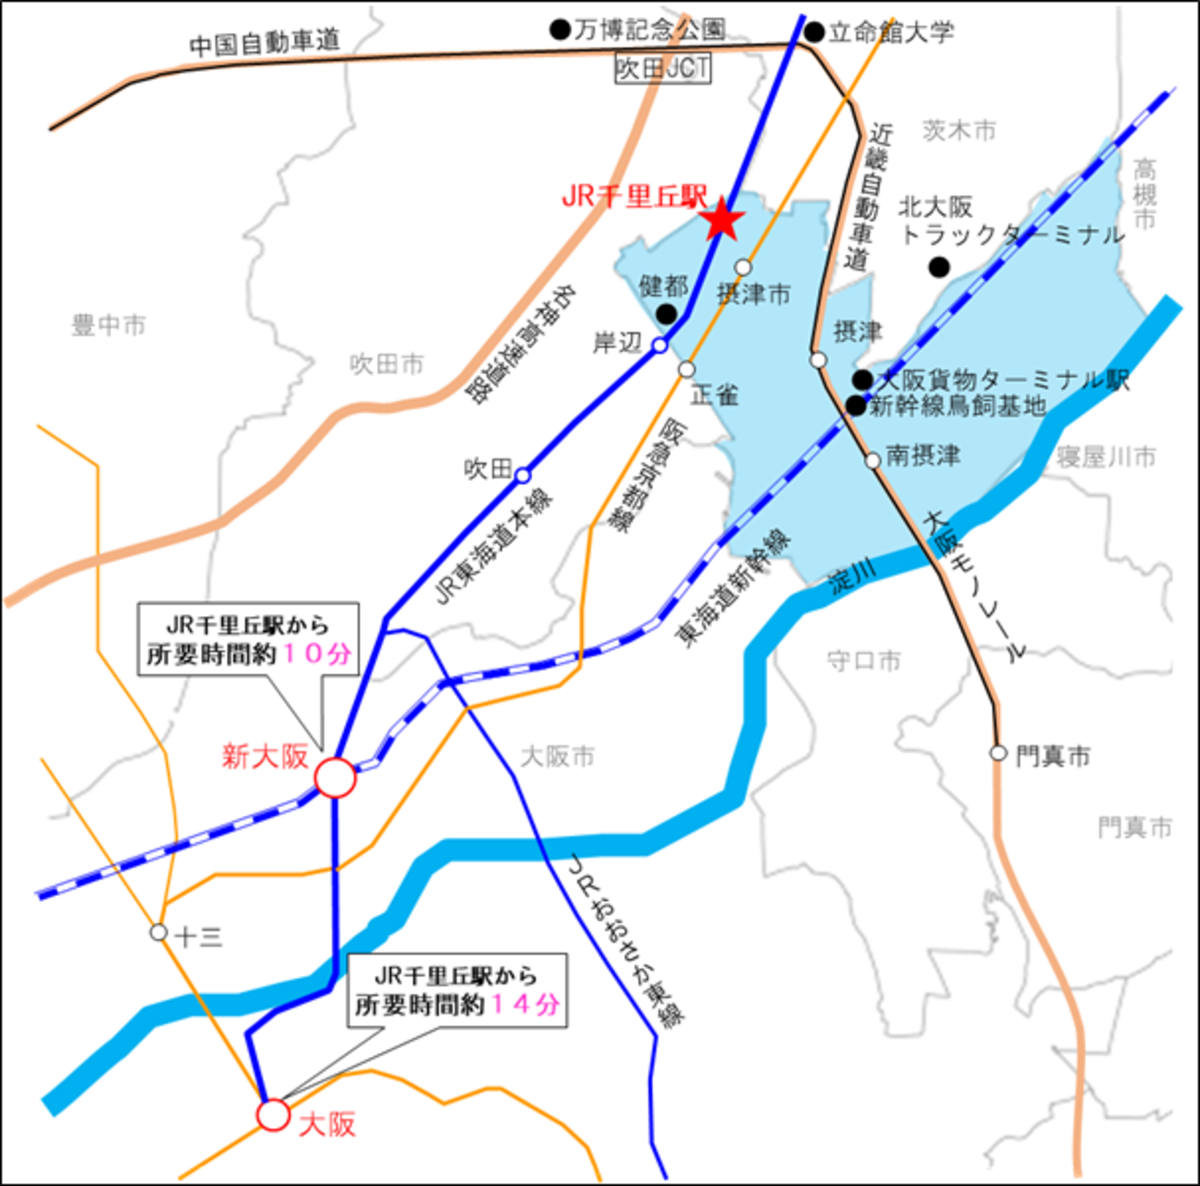 計画地の位置図。JR京都線で「新大阪」駅から約10分、「大阪」駅から約14分とアクセスも良好だ（出典：摂津市）